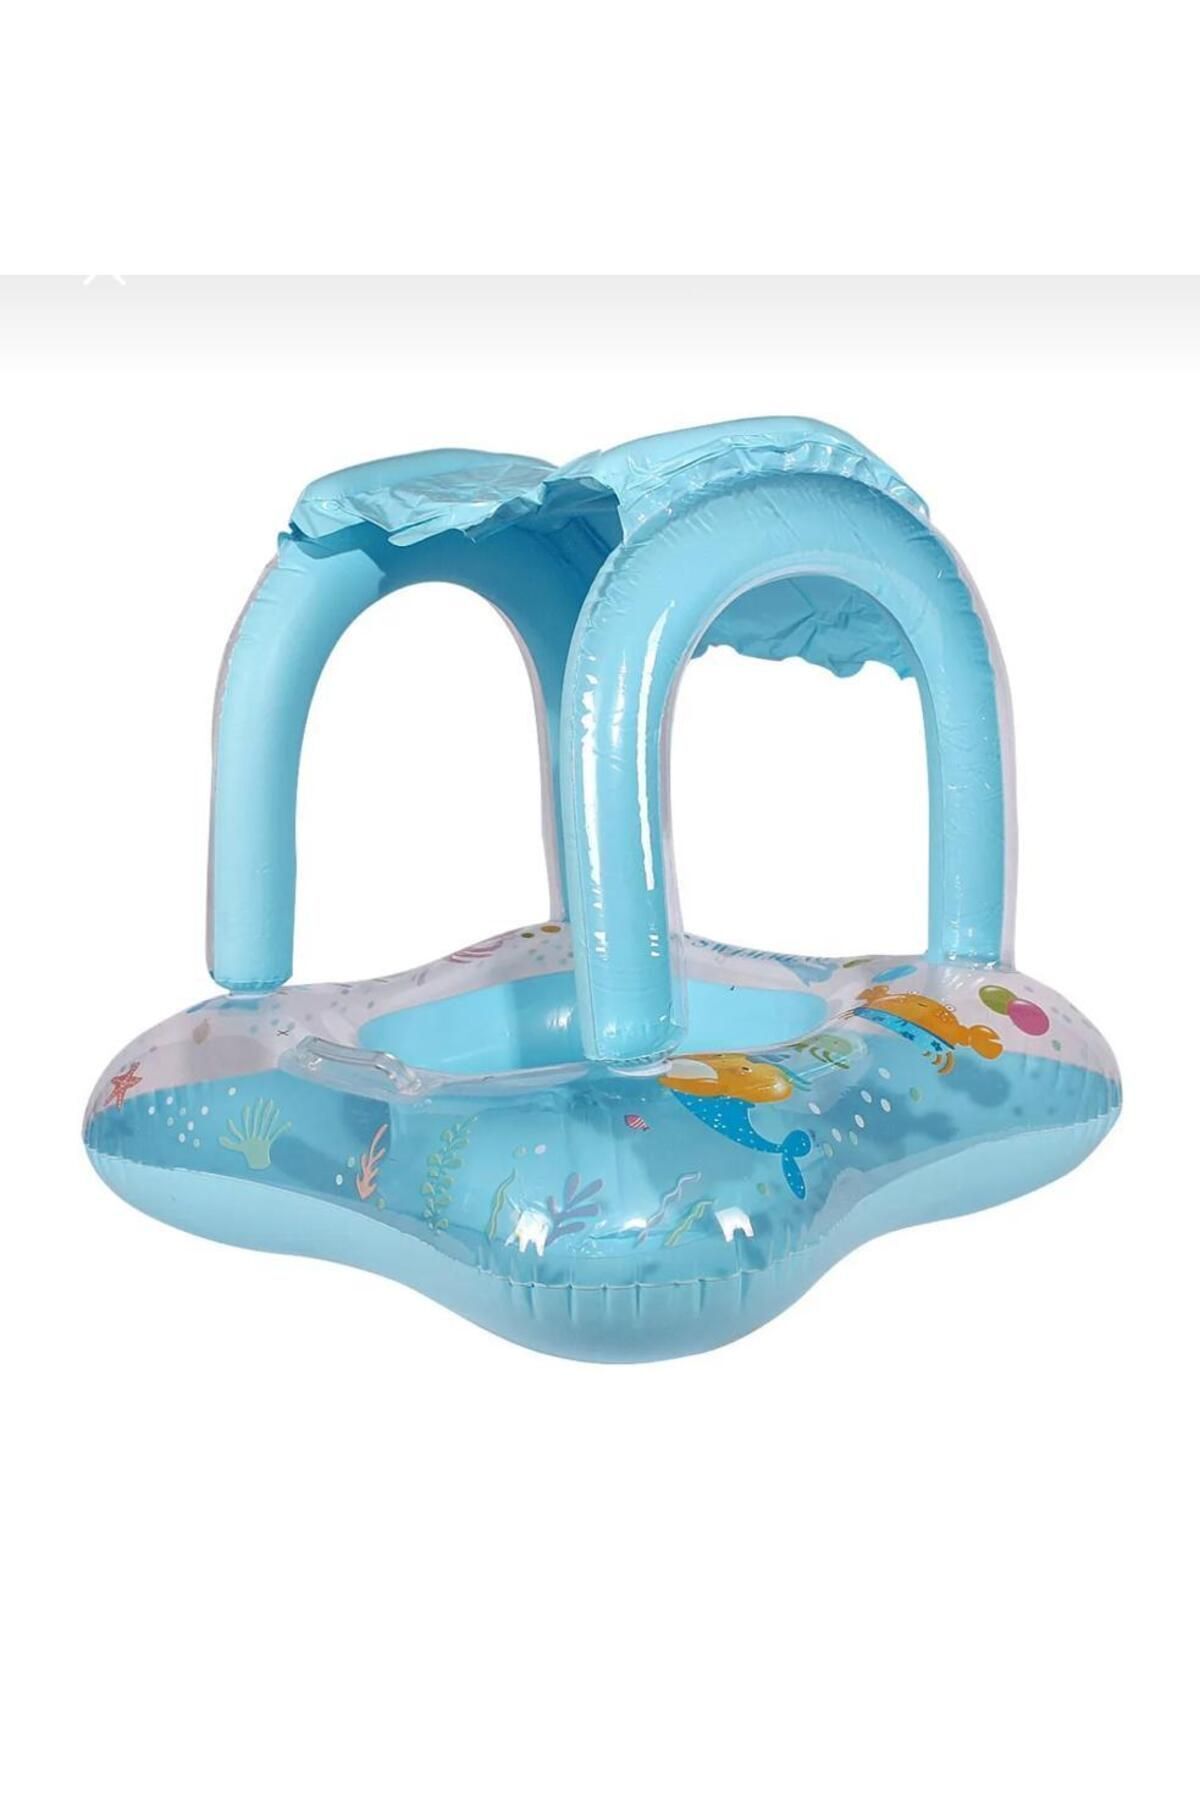 EYNİS Eynis Mavi Bebek Havuz Ve Deniz Simidi, Baby Pool Toılet,0-3 Yaş